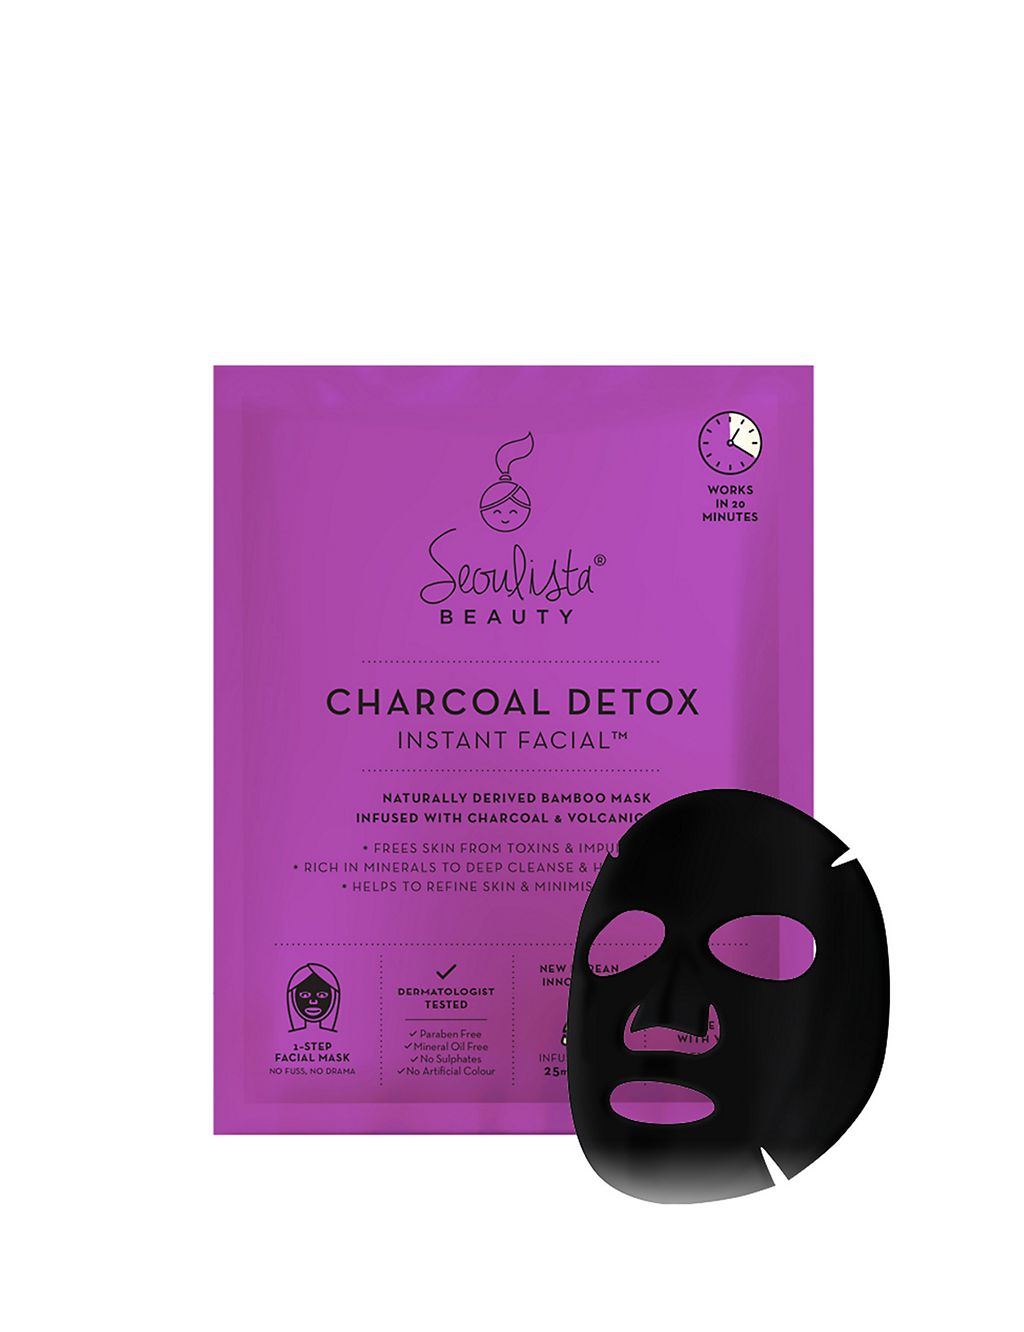 Charcoal Detox Instant Facial 35g 1 of 3